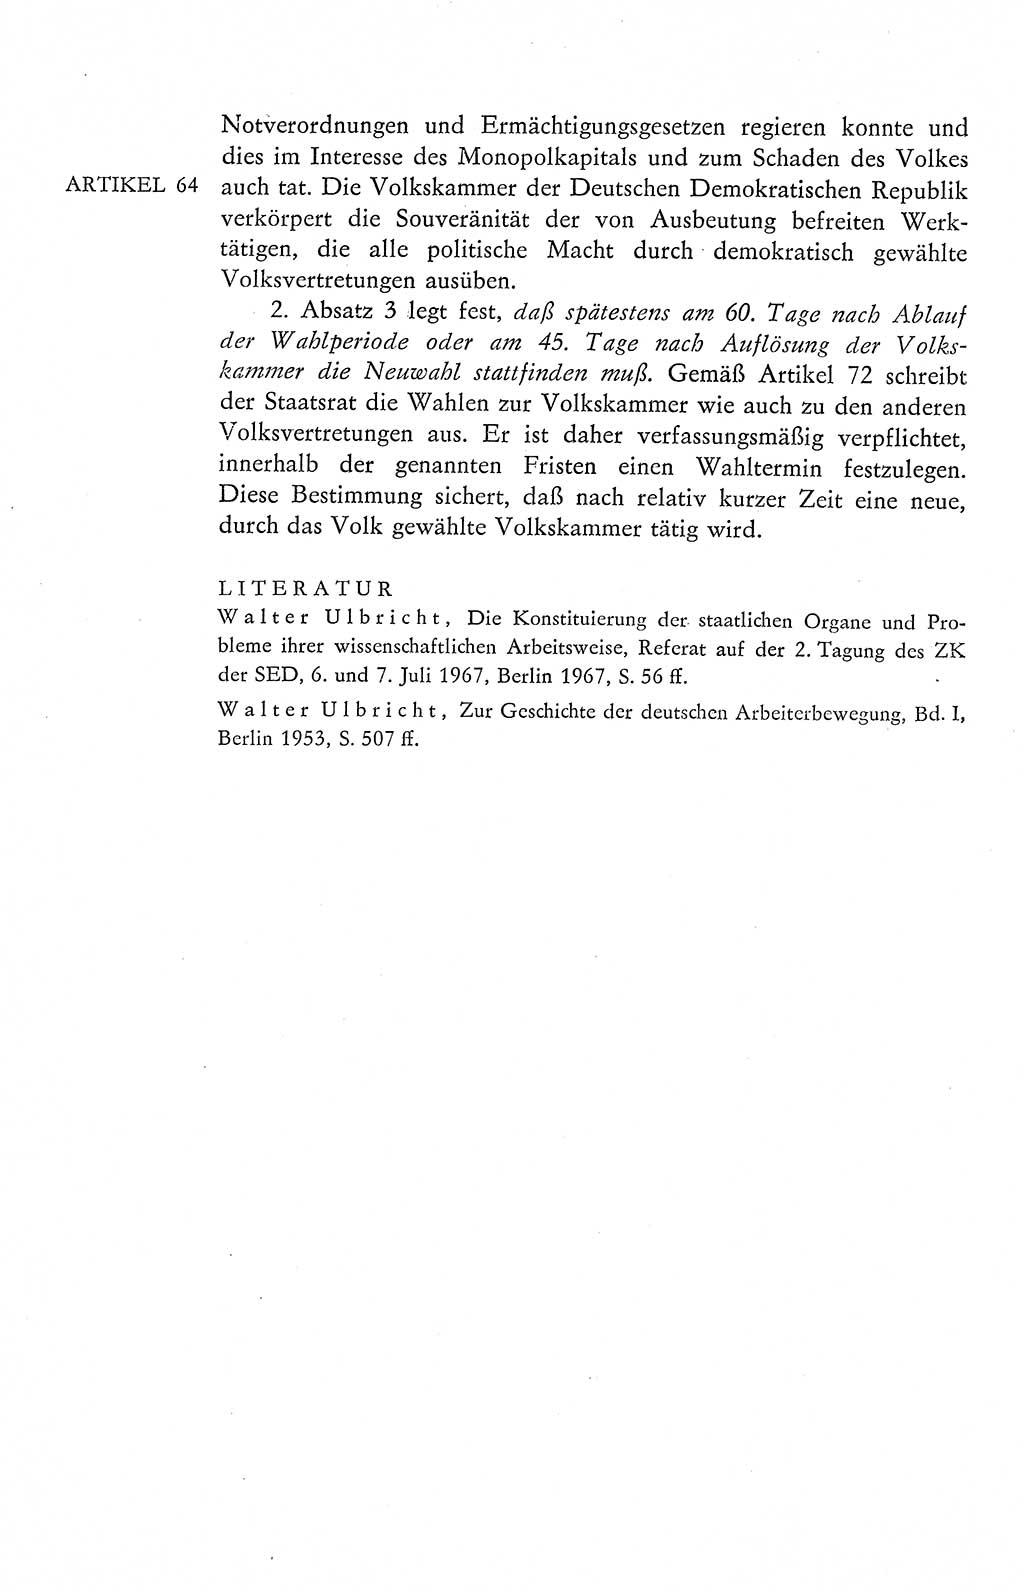 Verfassung der Deutschen Demokratischen Republik (DDR), Dokumente, Kommentar 1969, Band 2, Seite 294 (Verf. DDR Dok. Komm. 1969, Bd. 2, S. 294)